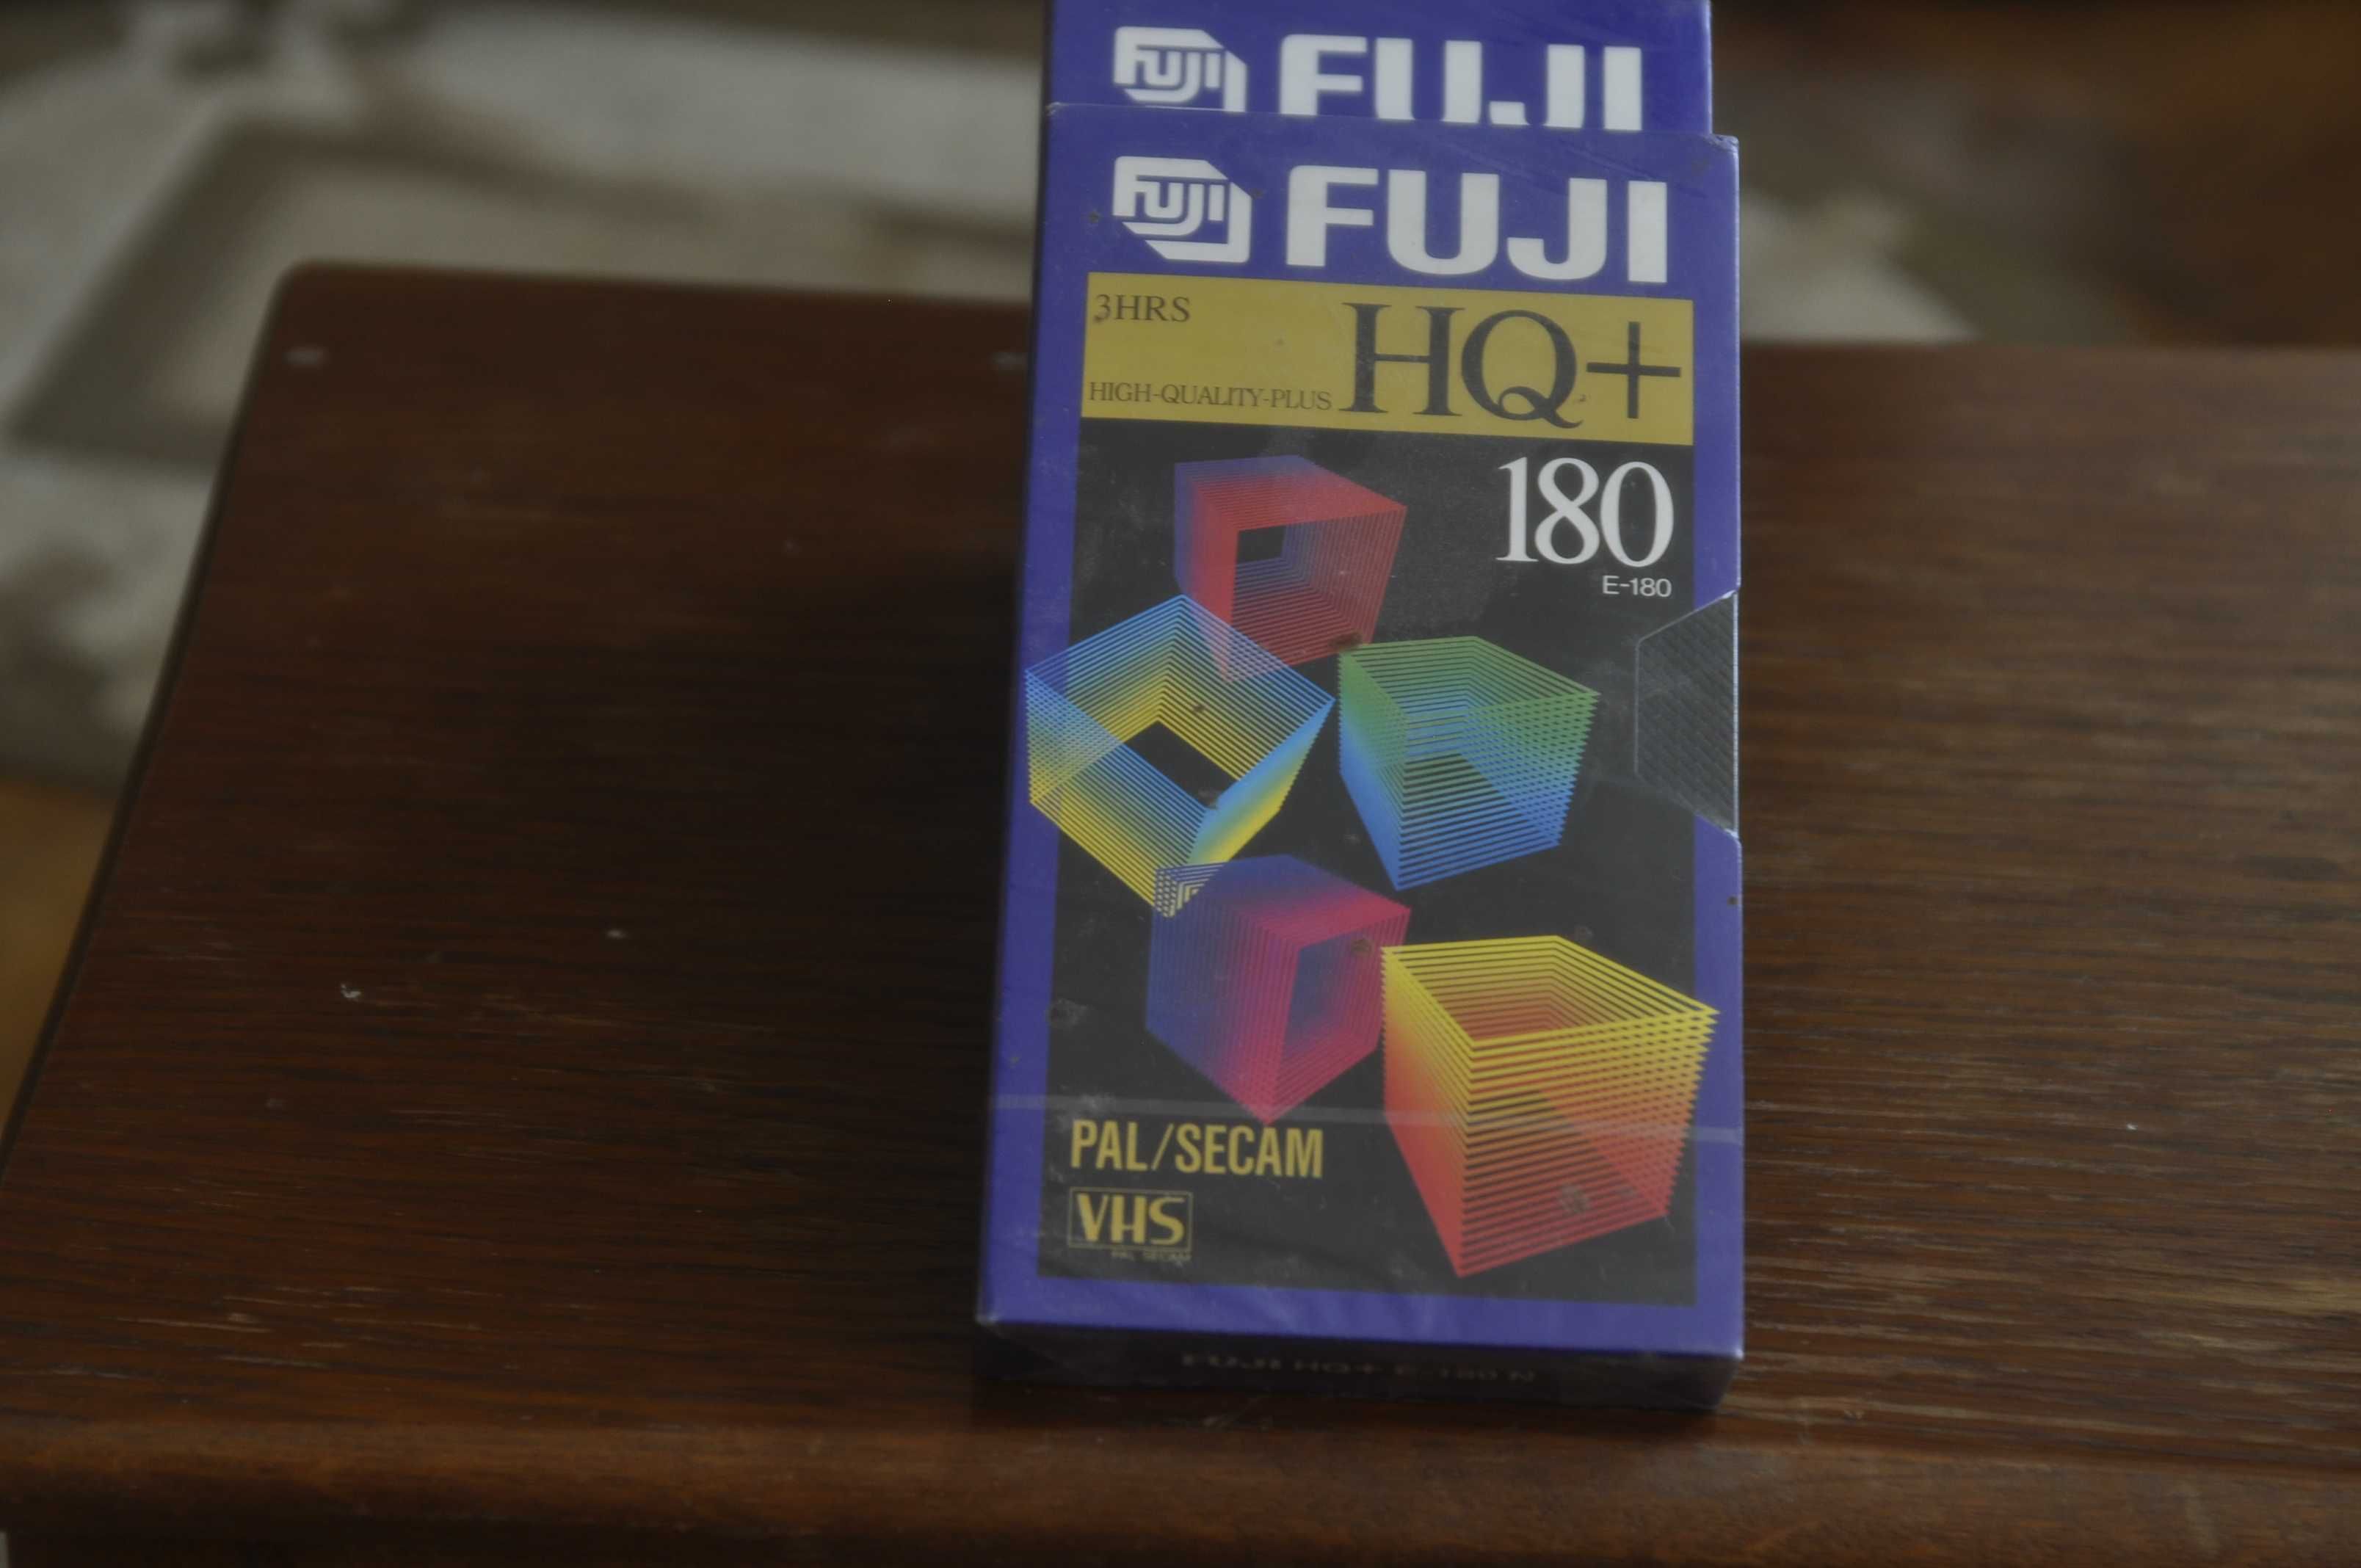 Casete video VHS sigilate Fuji HQ 180 si Panasonic,Basf Kodak E 240